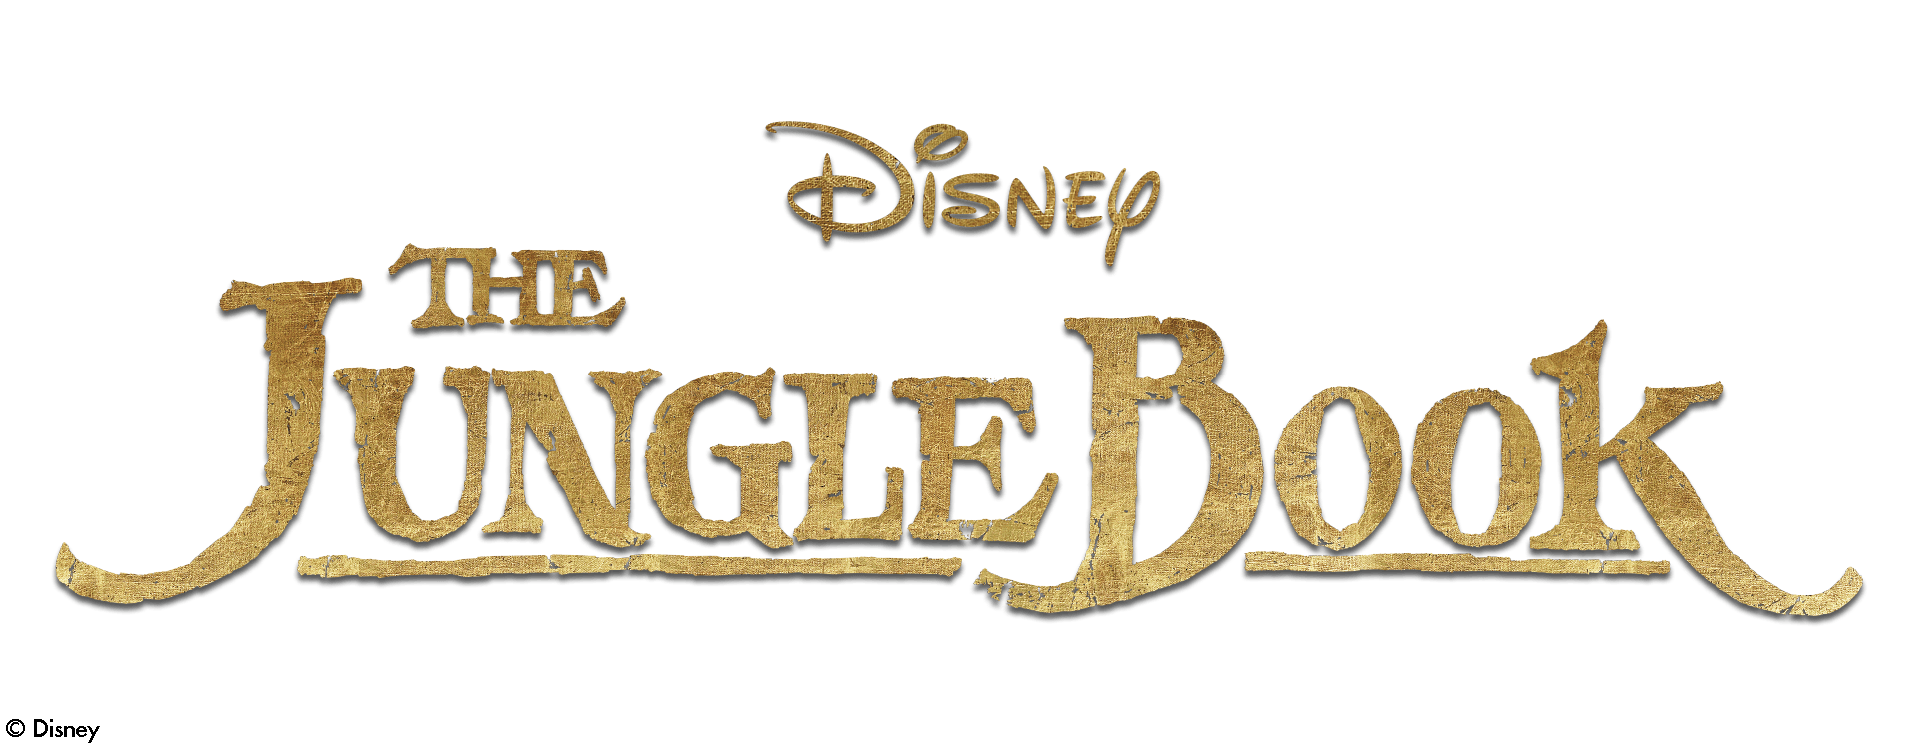 The Jungle Book Logo - Disney Jungle Book